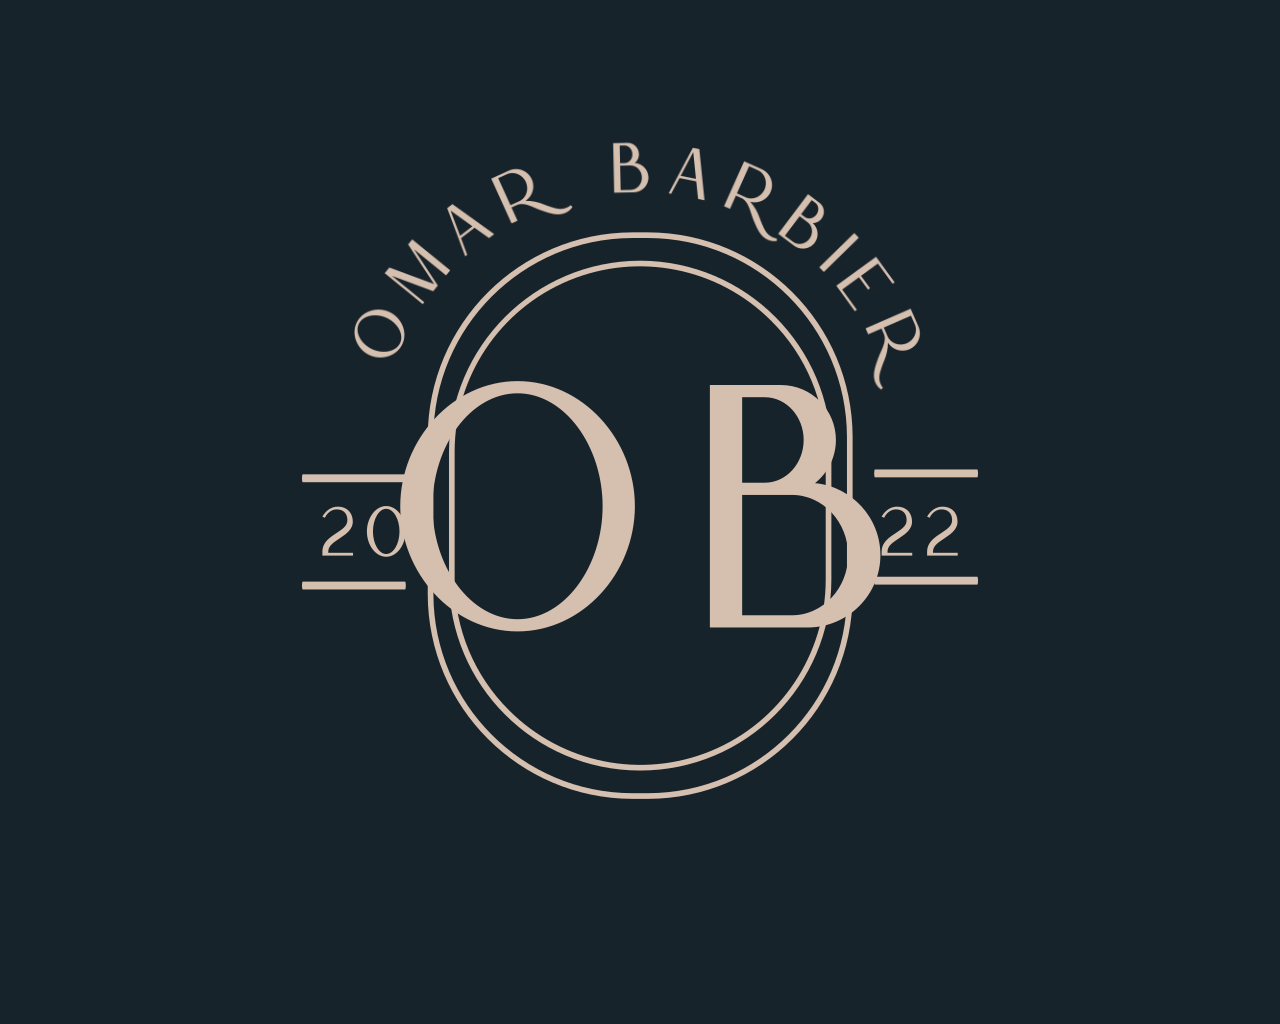 Omar Barbier's logo